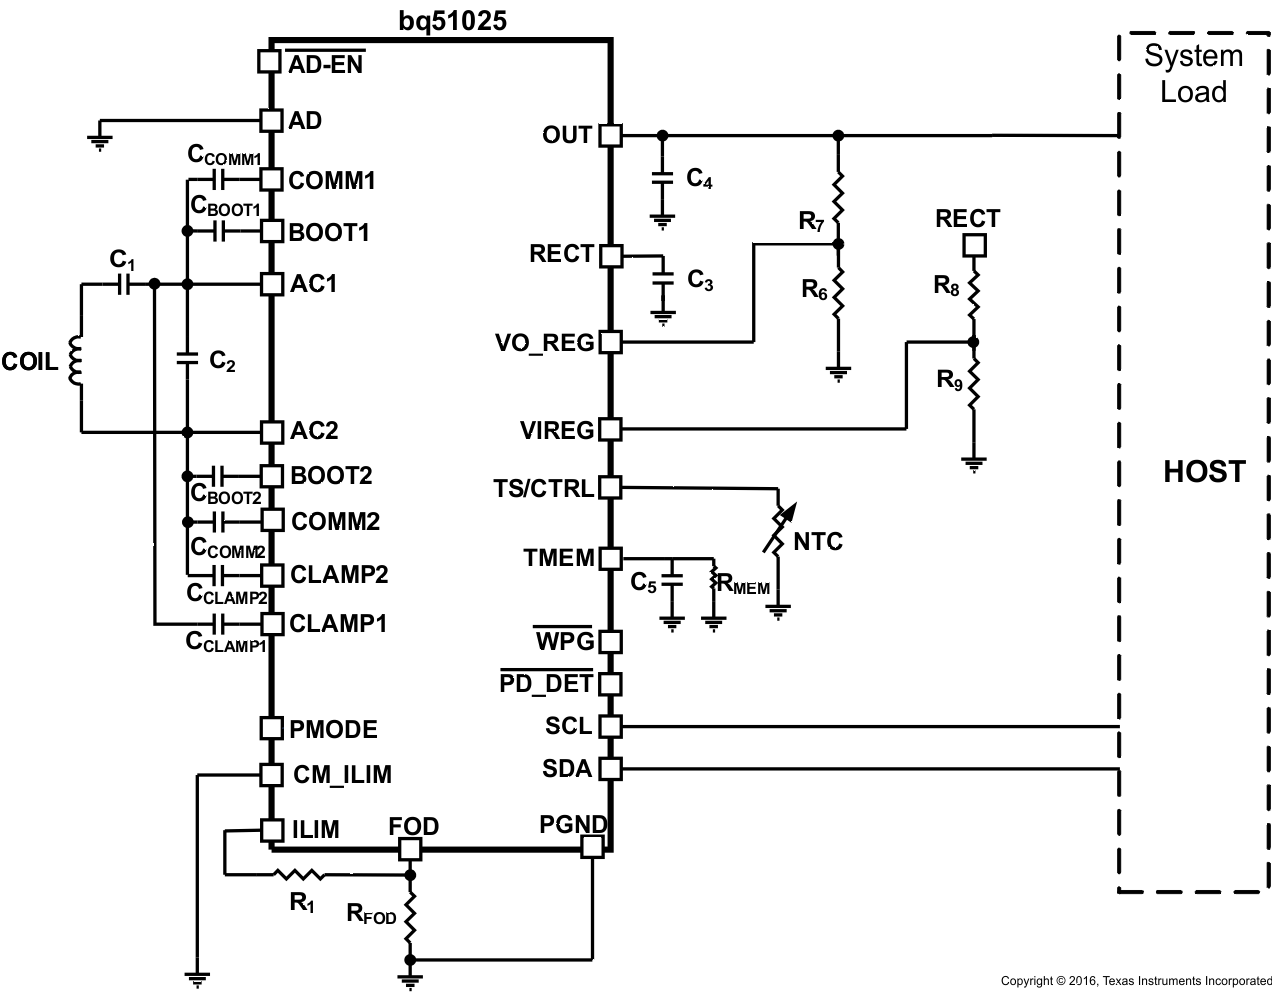 bq51025 Simplified_schematic_slusbx7.gif